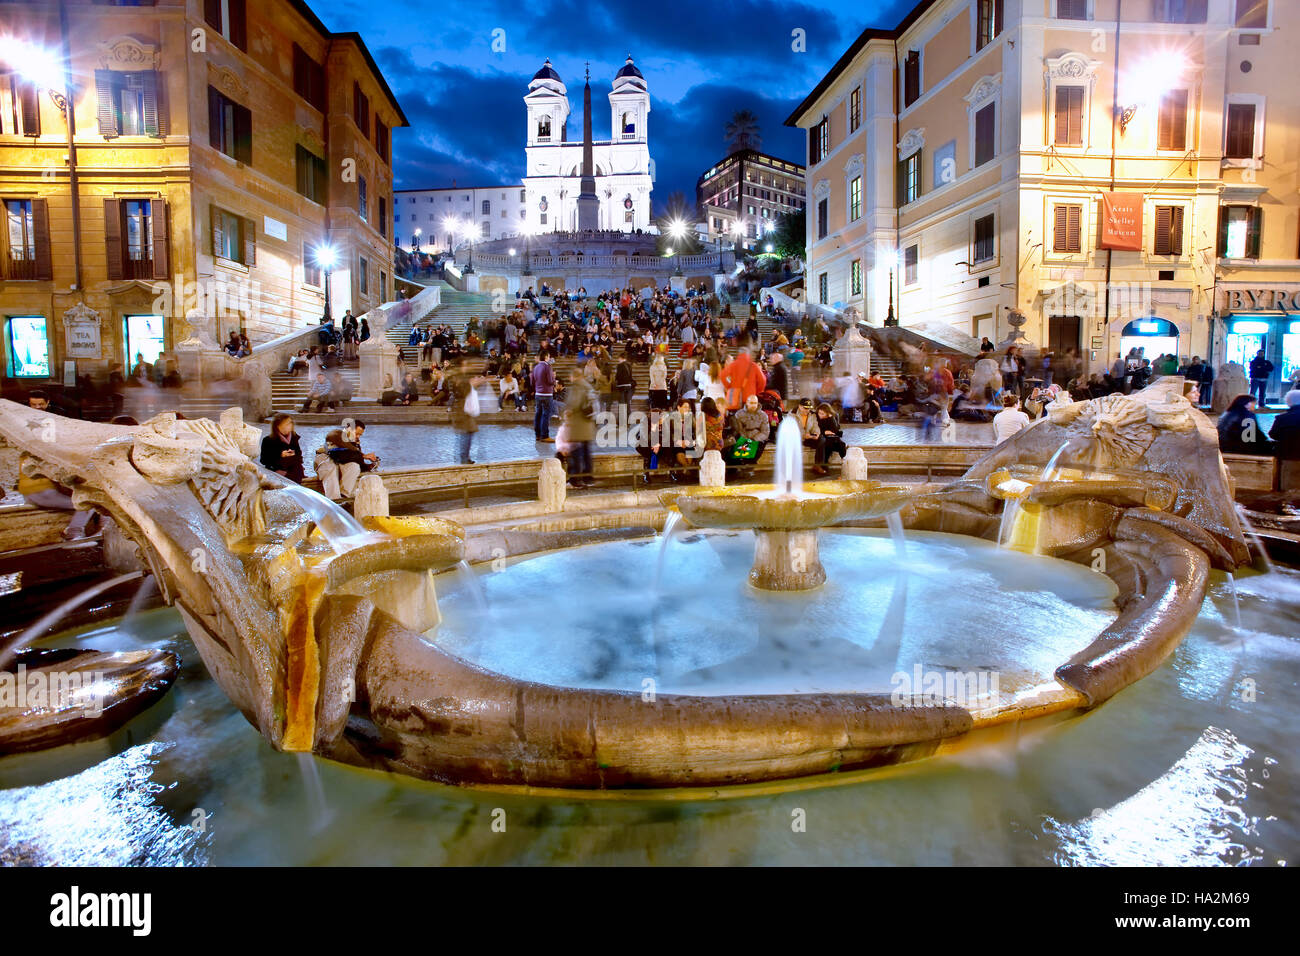 Fontana della Barcaccia fountain  in Piazza di Spagna, Rome, Italy Stock Photo